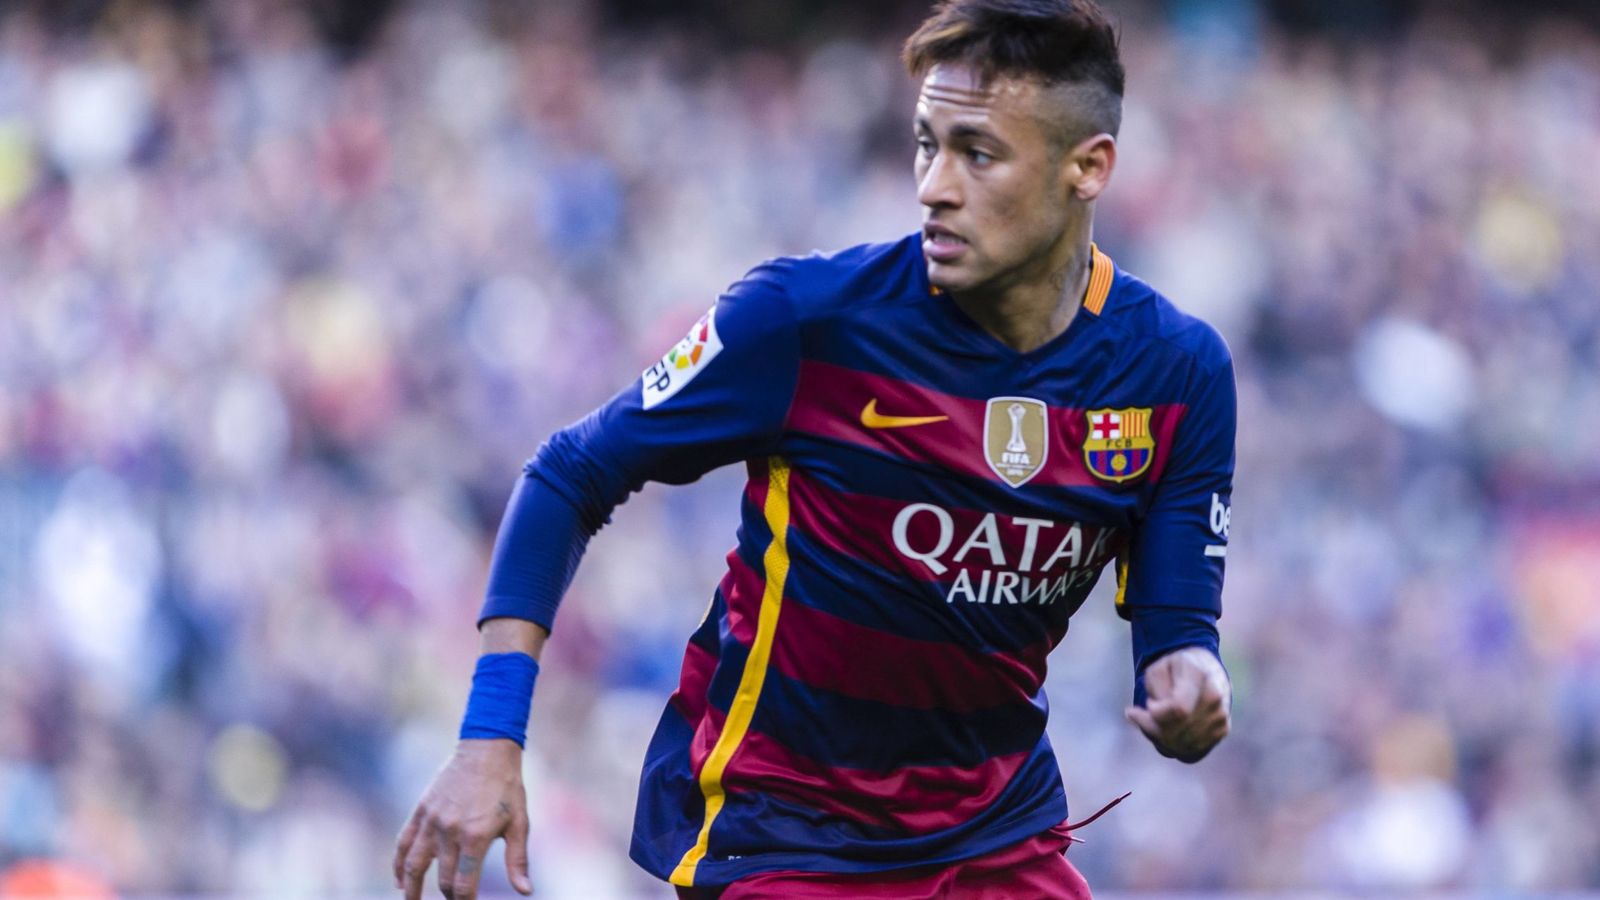 Foto: Neymar, durante el partido del Barça contra el Getafe. (Cordon Press)